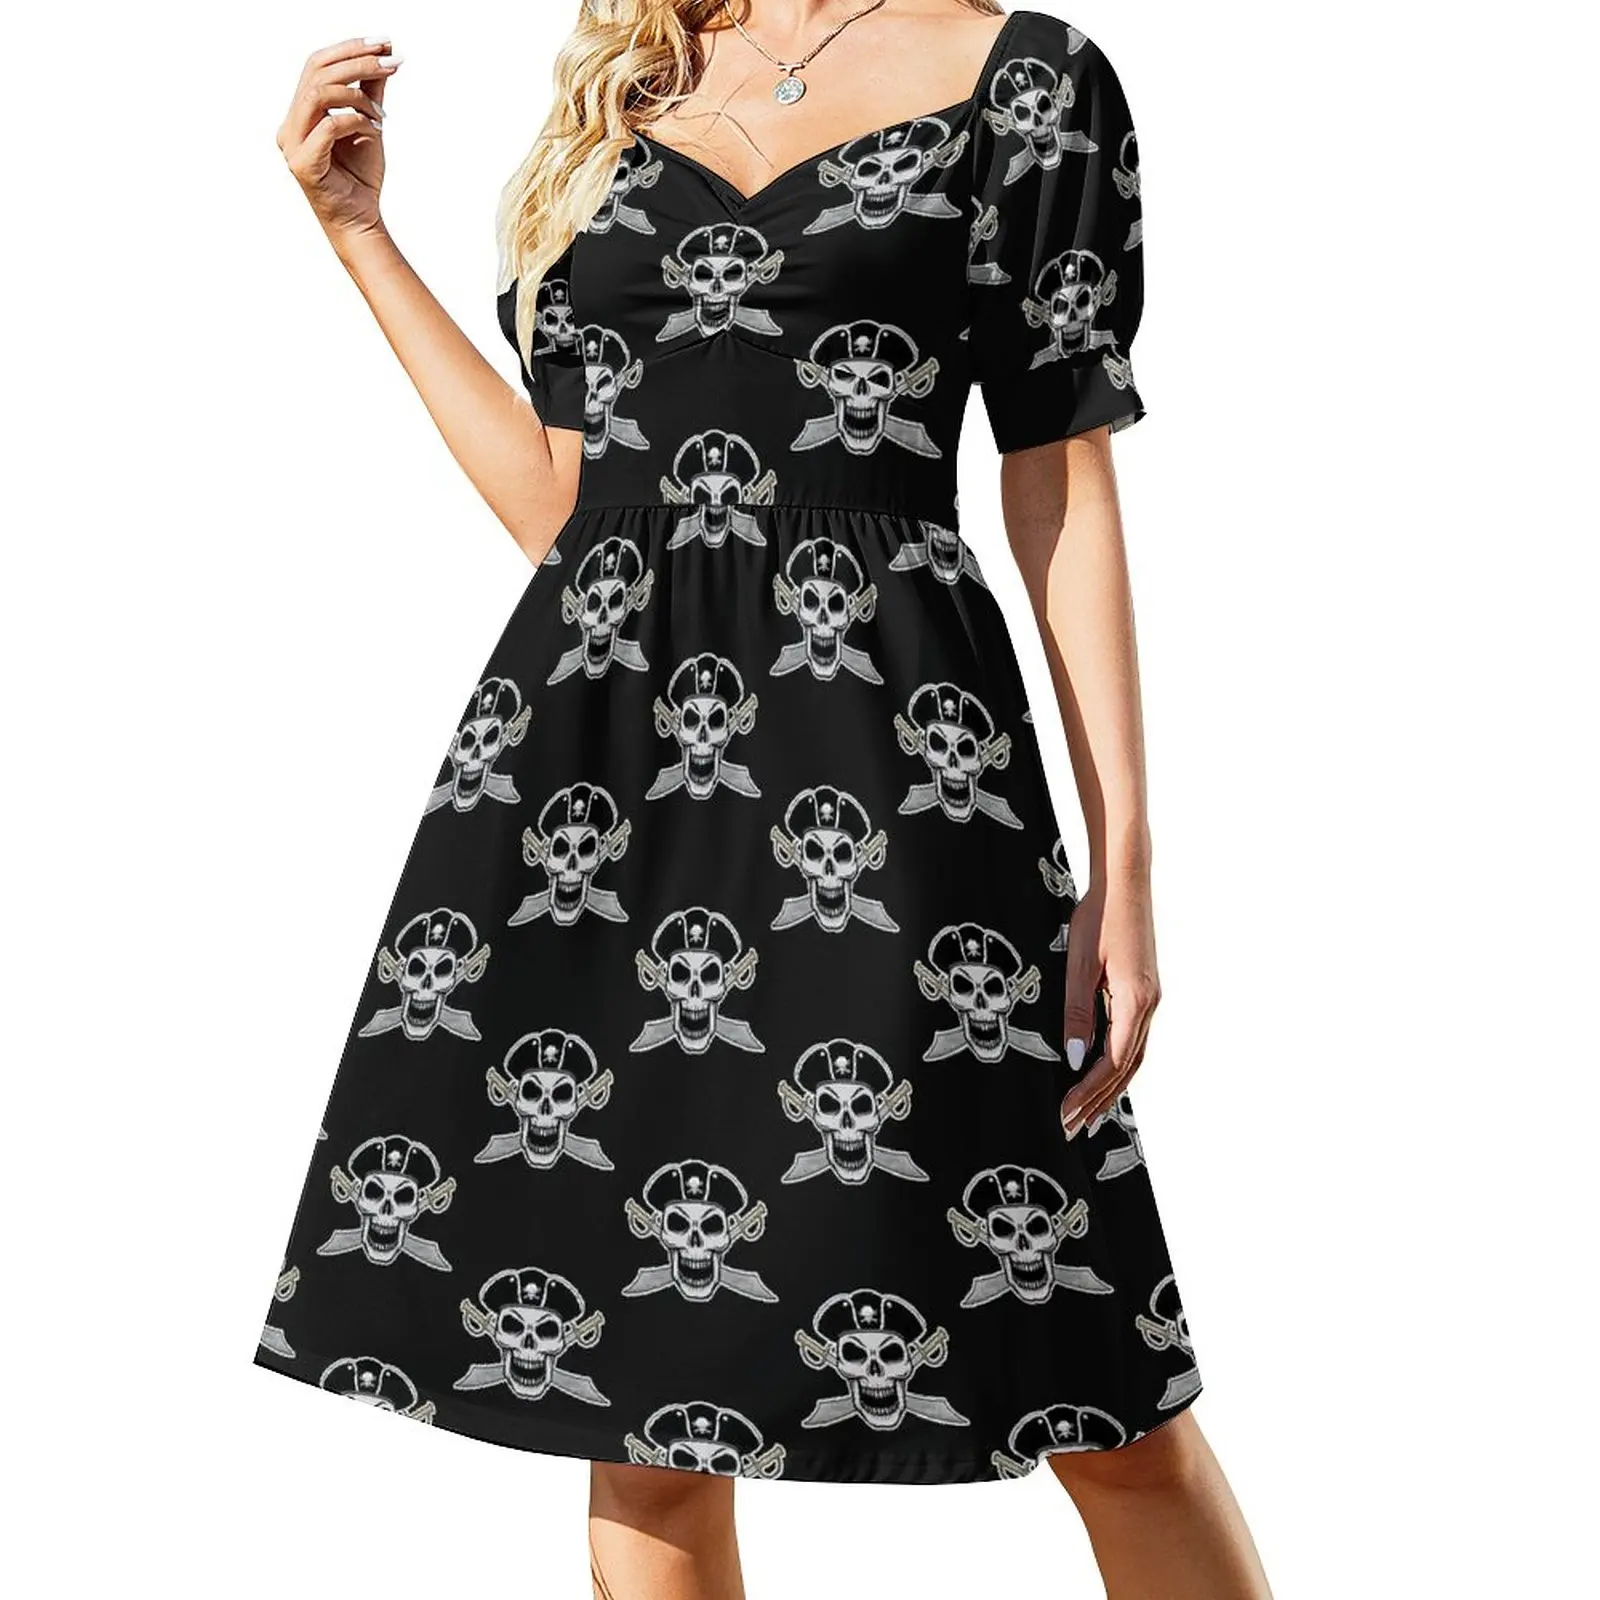 

Pirate skull and swords theme Sleeveless Dress luxury dress birthday dresses for women women long dresses